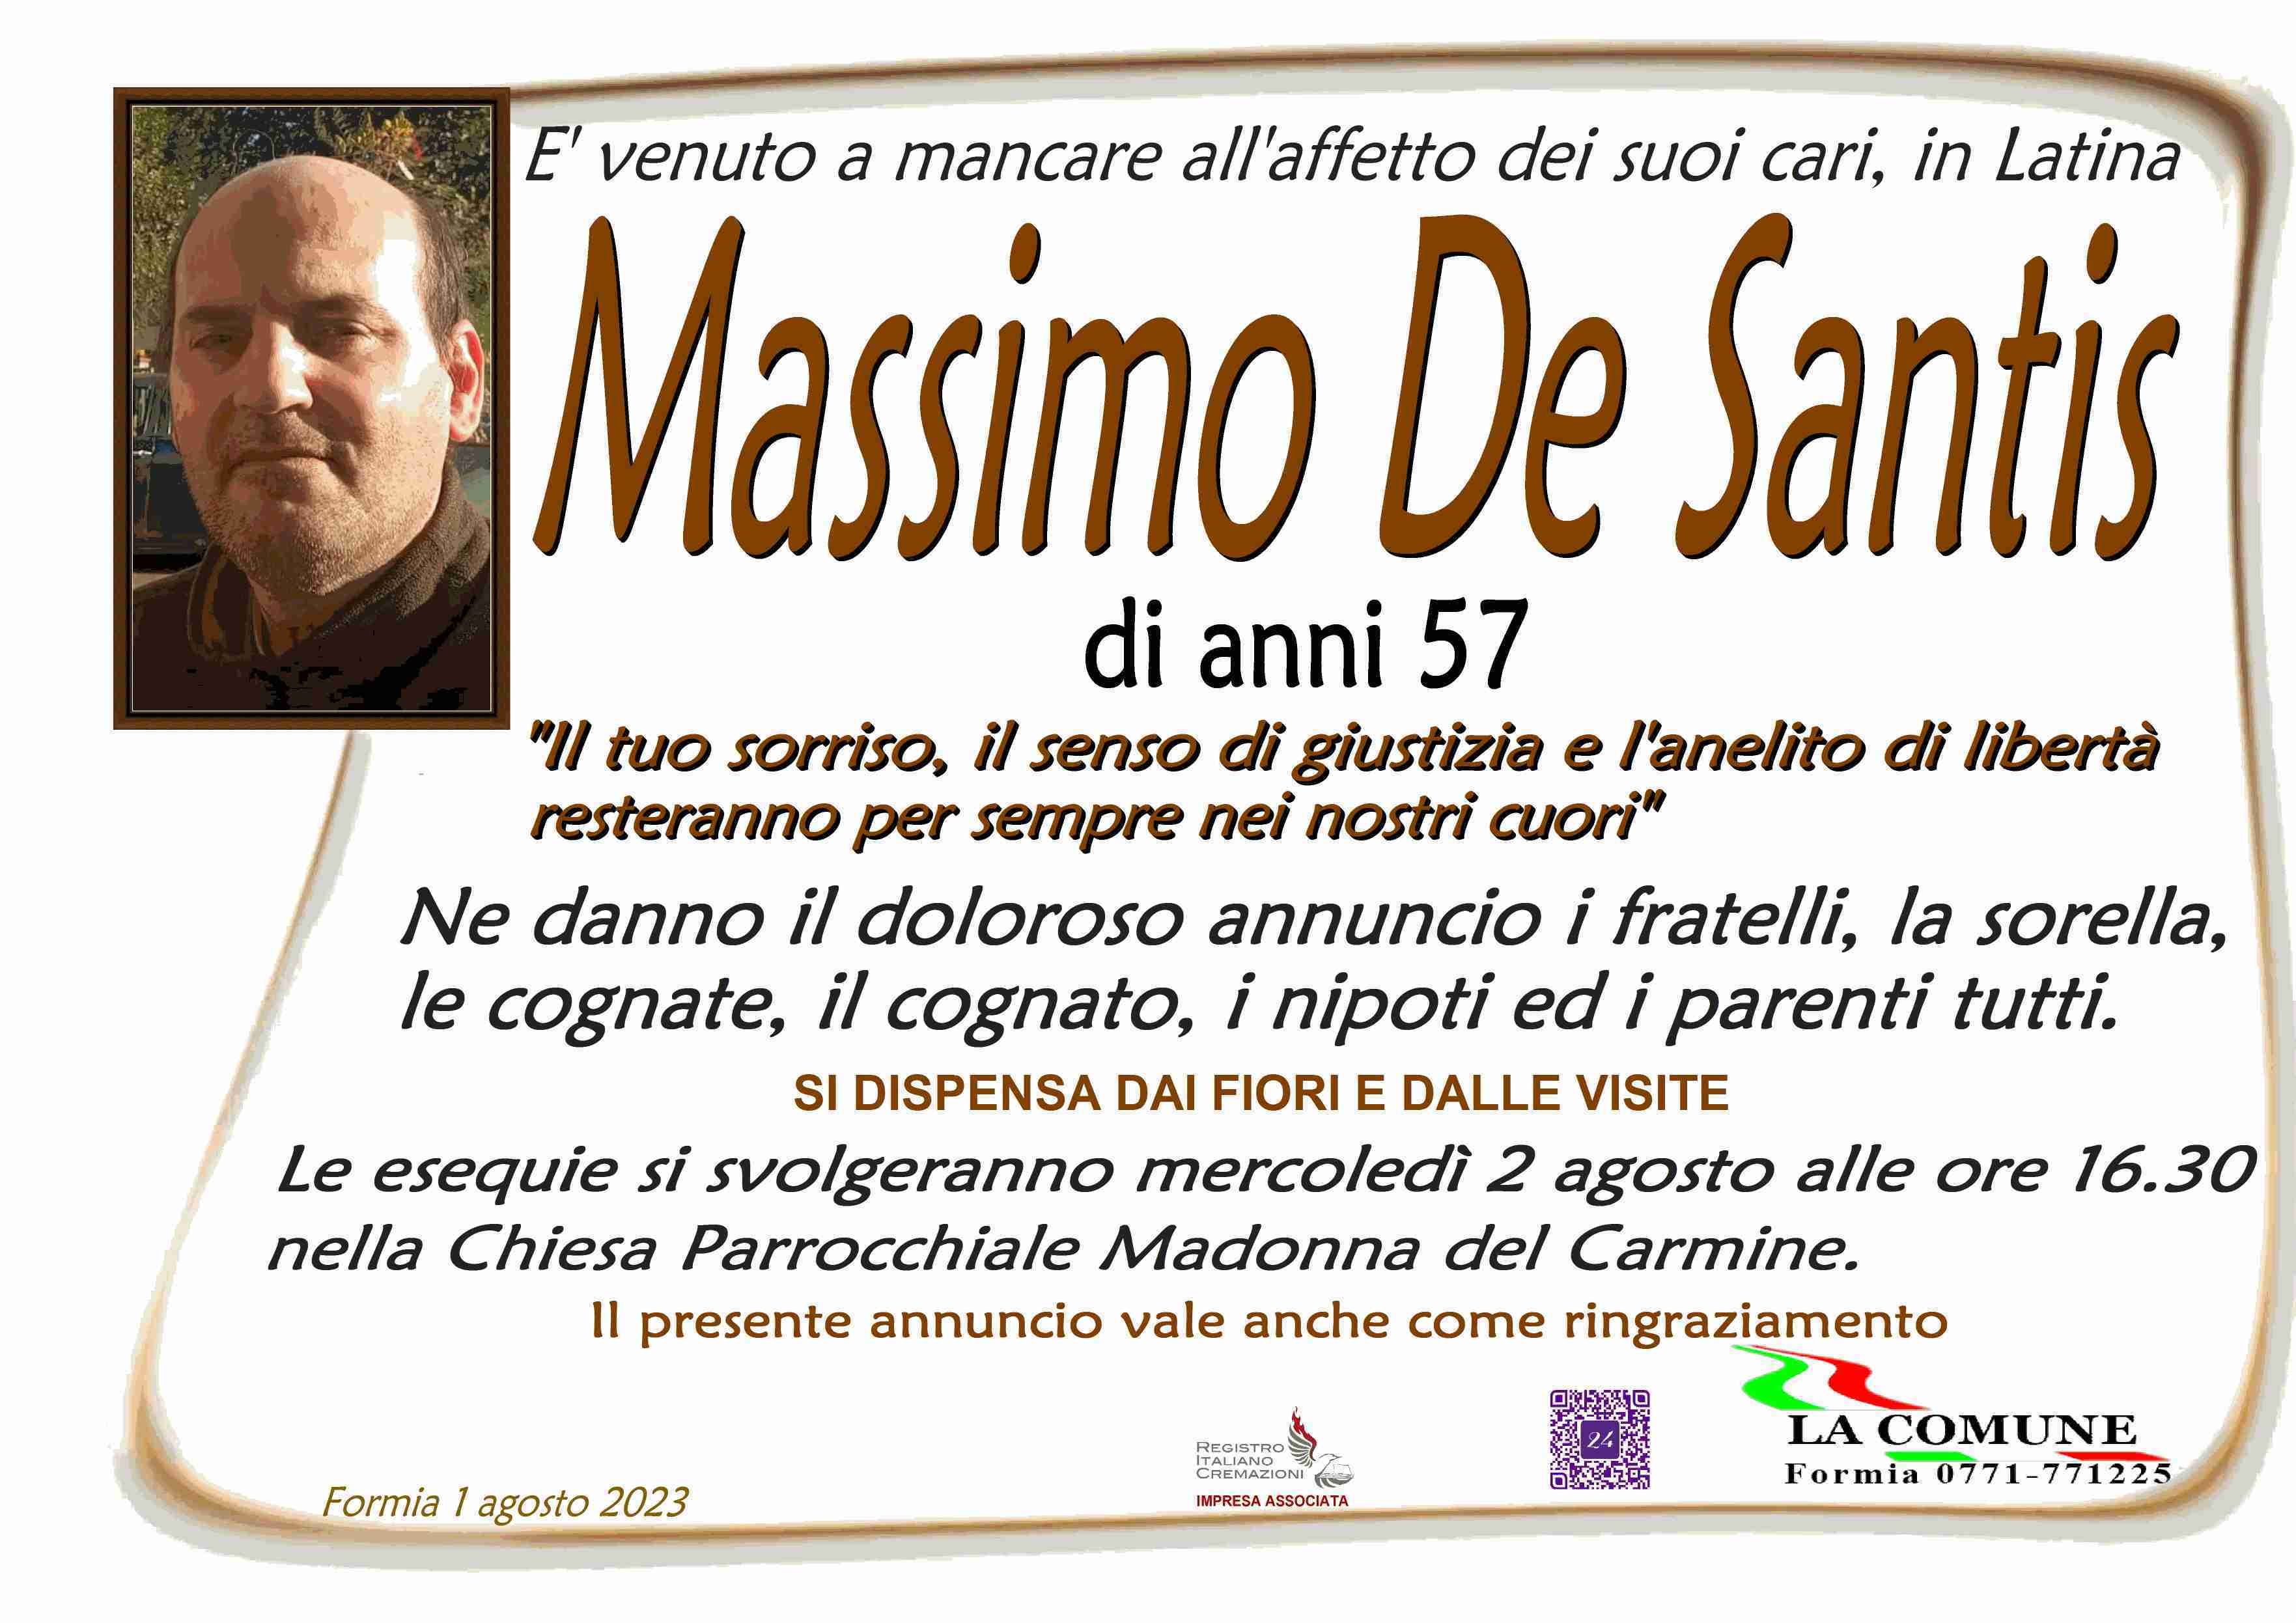 Massimo De Santis